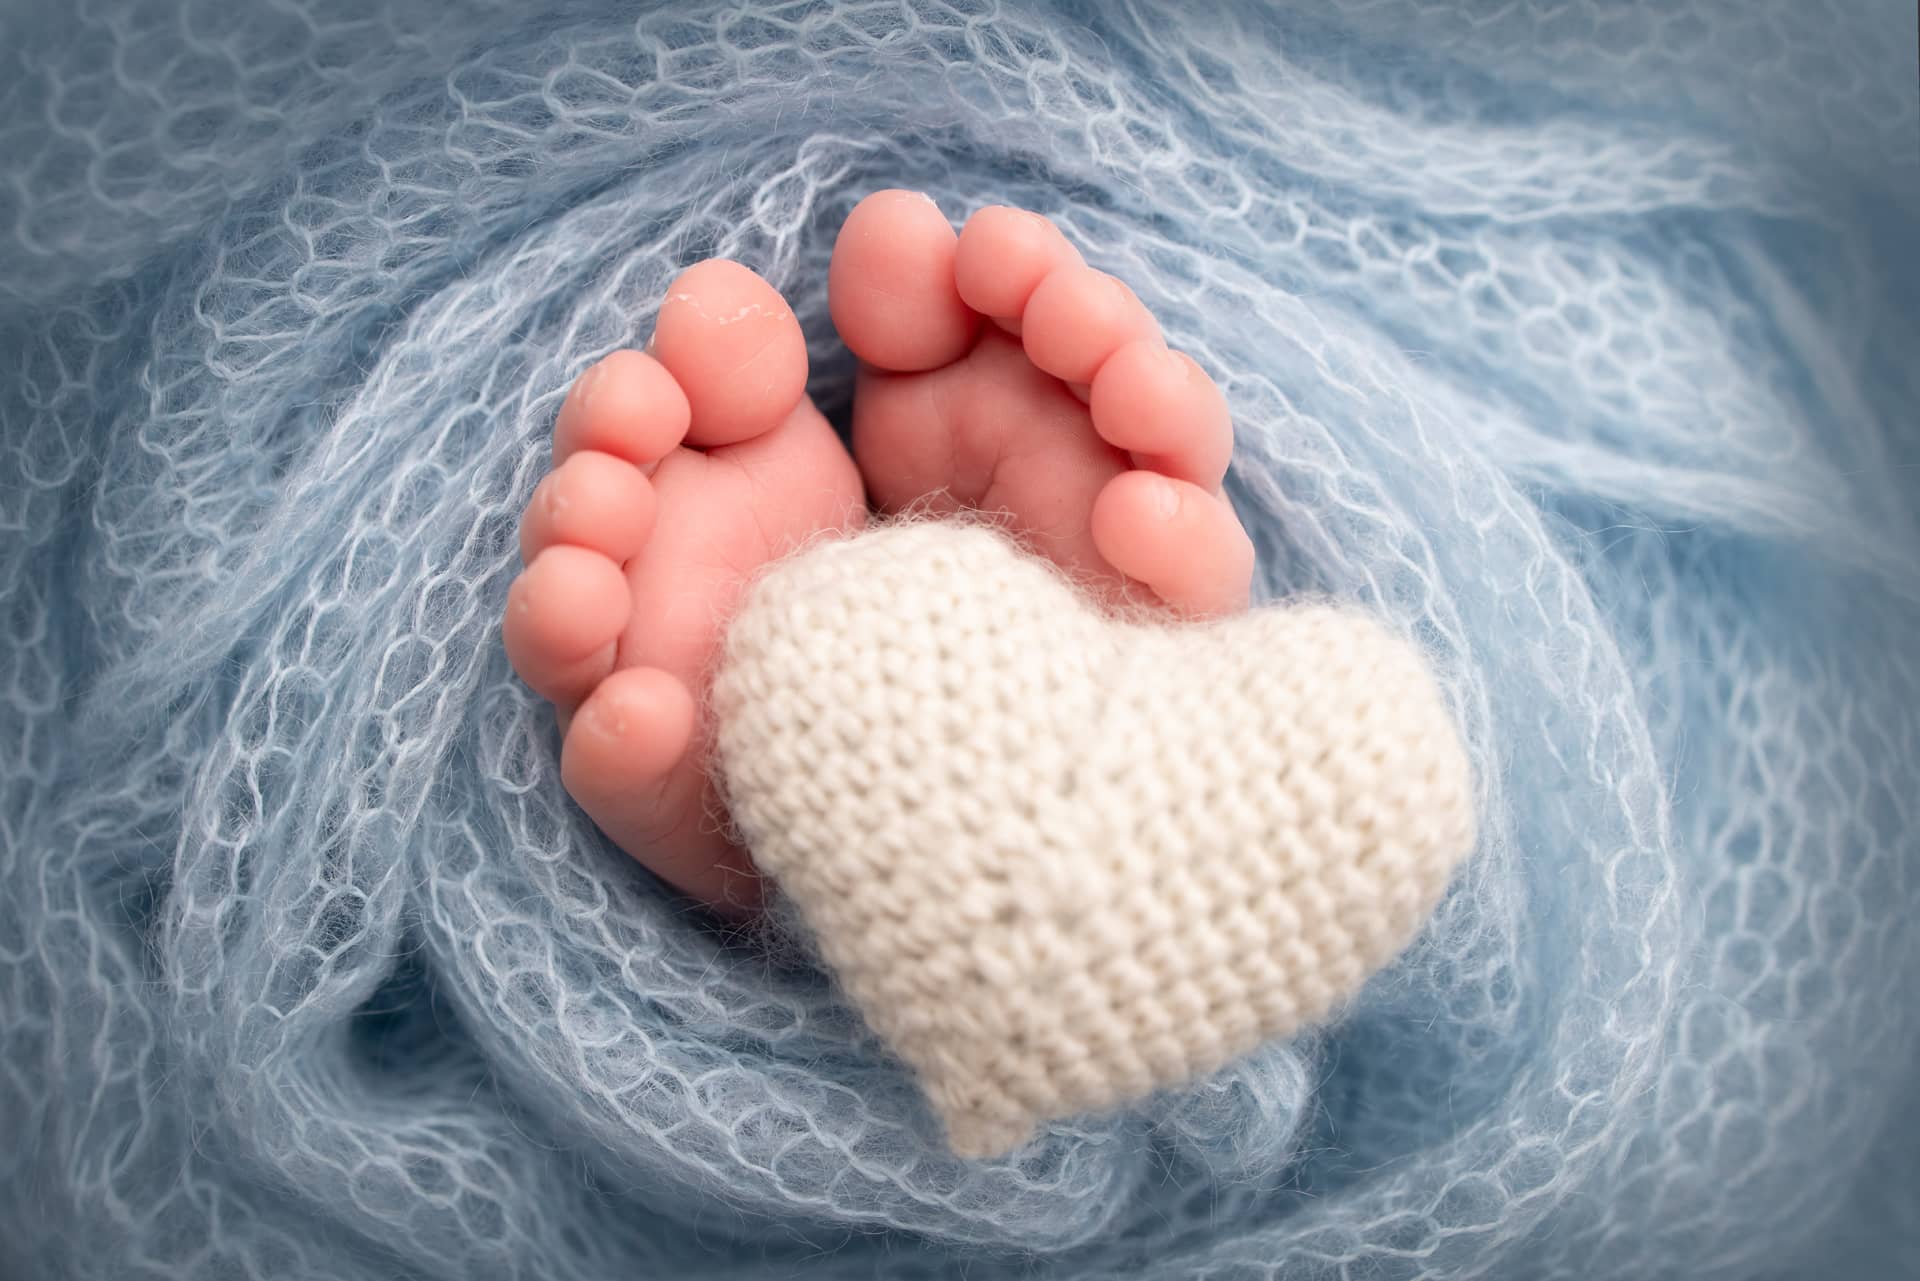 Feet newborn knitted white heart legs baby macro photography image